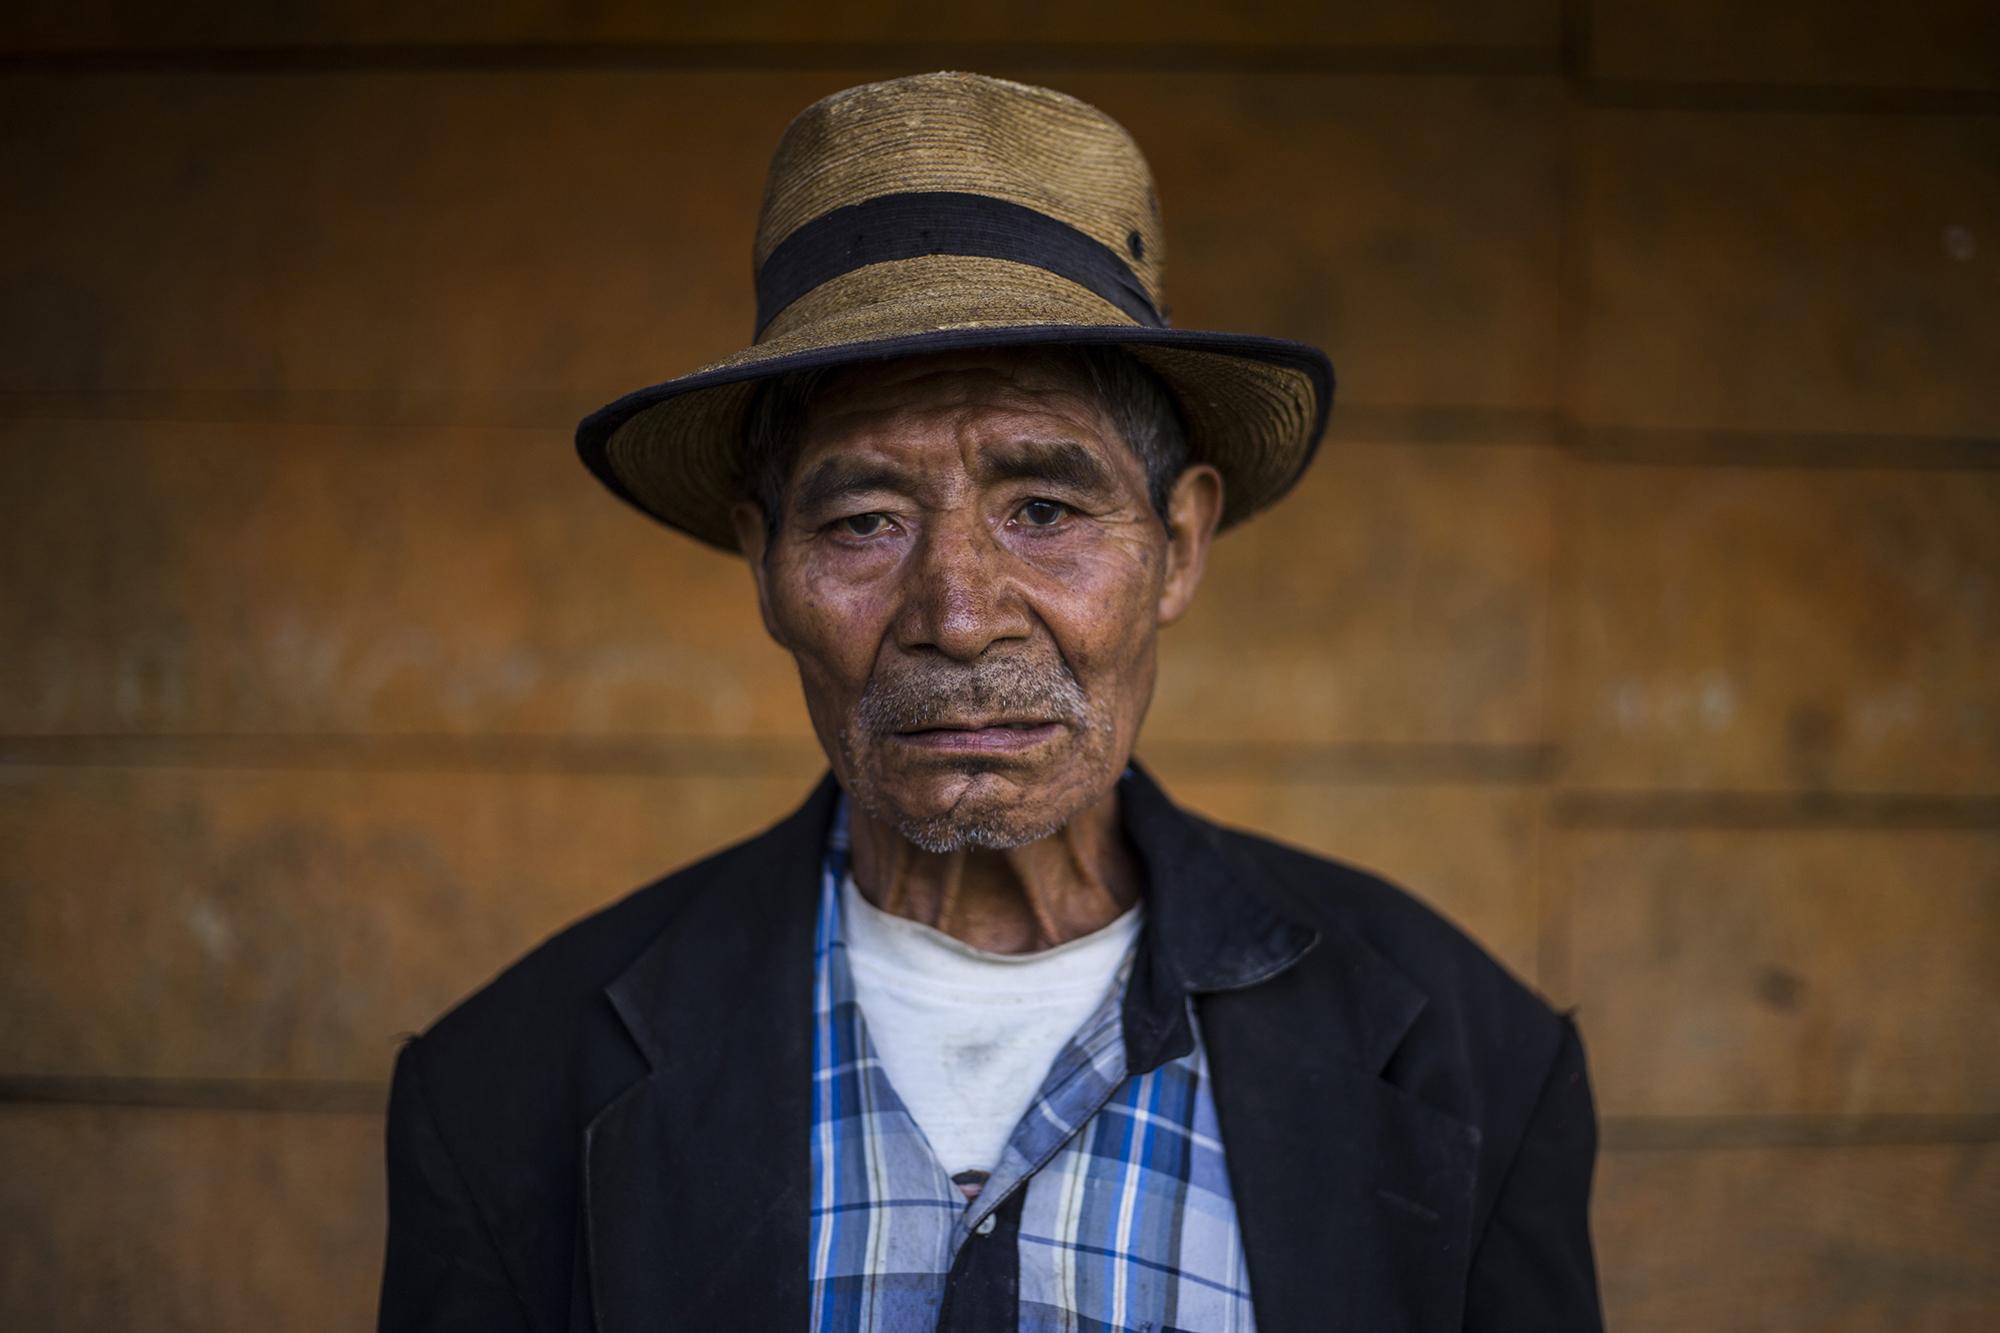 Juan Chávez, de 77 años, perdió a sus esposa, suegra y a su cuñado durante los ataques del Ejército de Guatemala, en la masacre del 16 de abril de 1981. A su edad, busca la justicia, no falta a ninguna reunión para conocer los procesos para que el Estado repare los daños de la guerra.